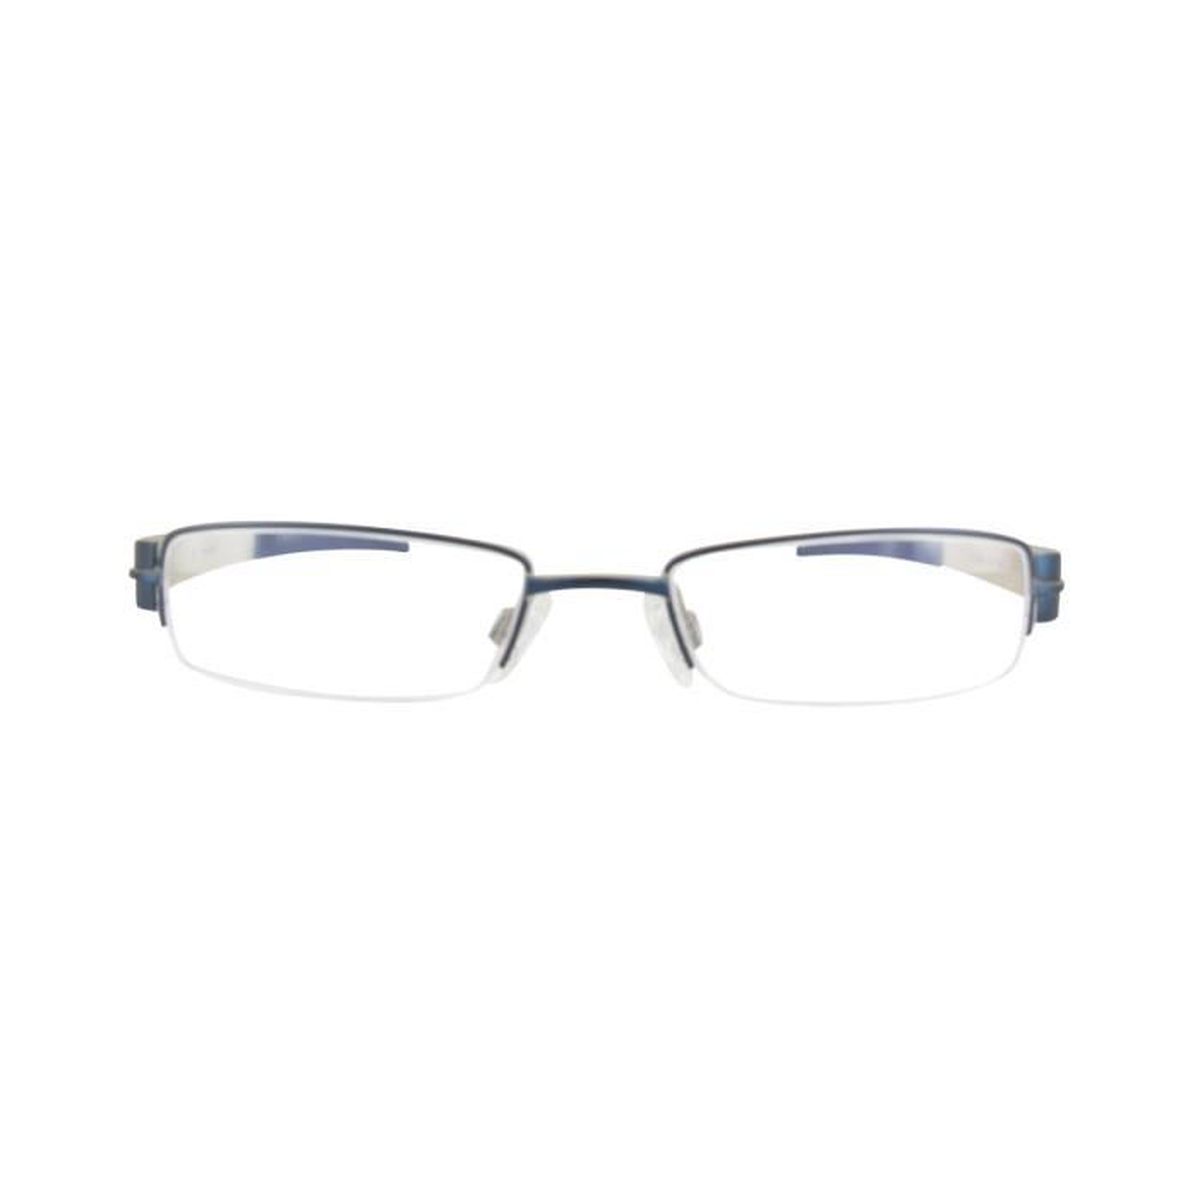 Lunettes de vue enfant REEBOK B8098 BIEGE/BLUE Achat / Vente lunettes de vue REEBOK Lunettes de vue Garçon Enfant - Cdiscoun